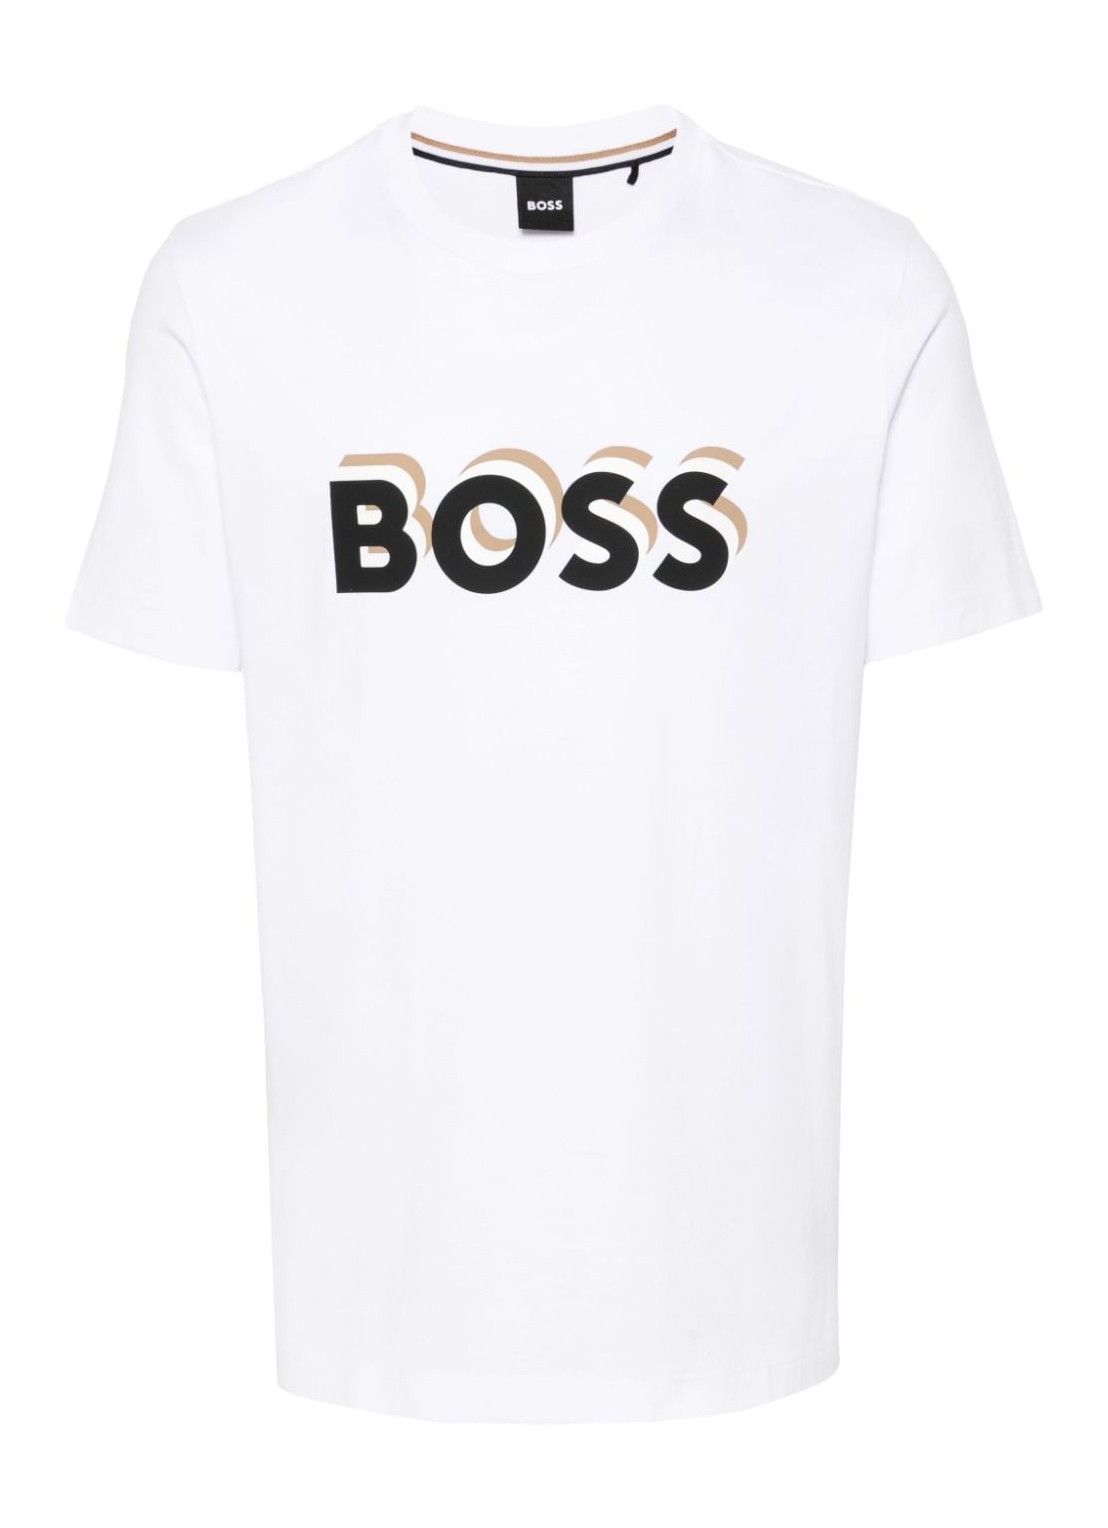 Camiseta boss t-shirt man tiburt 427 50506923 100 talla S
 